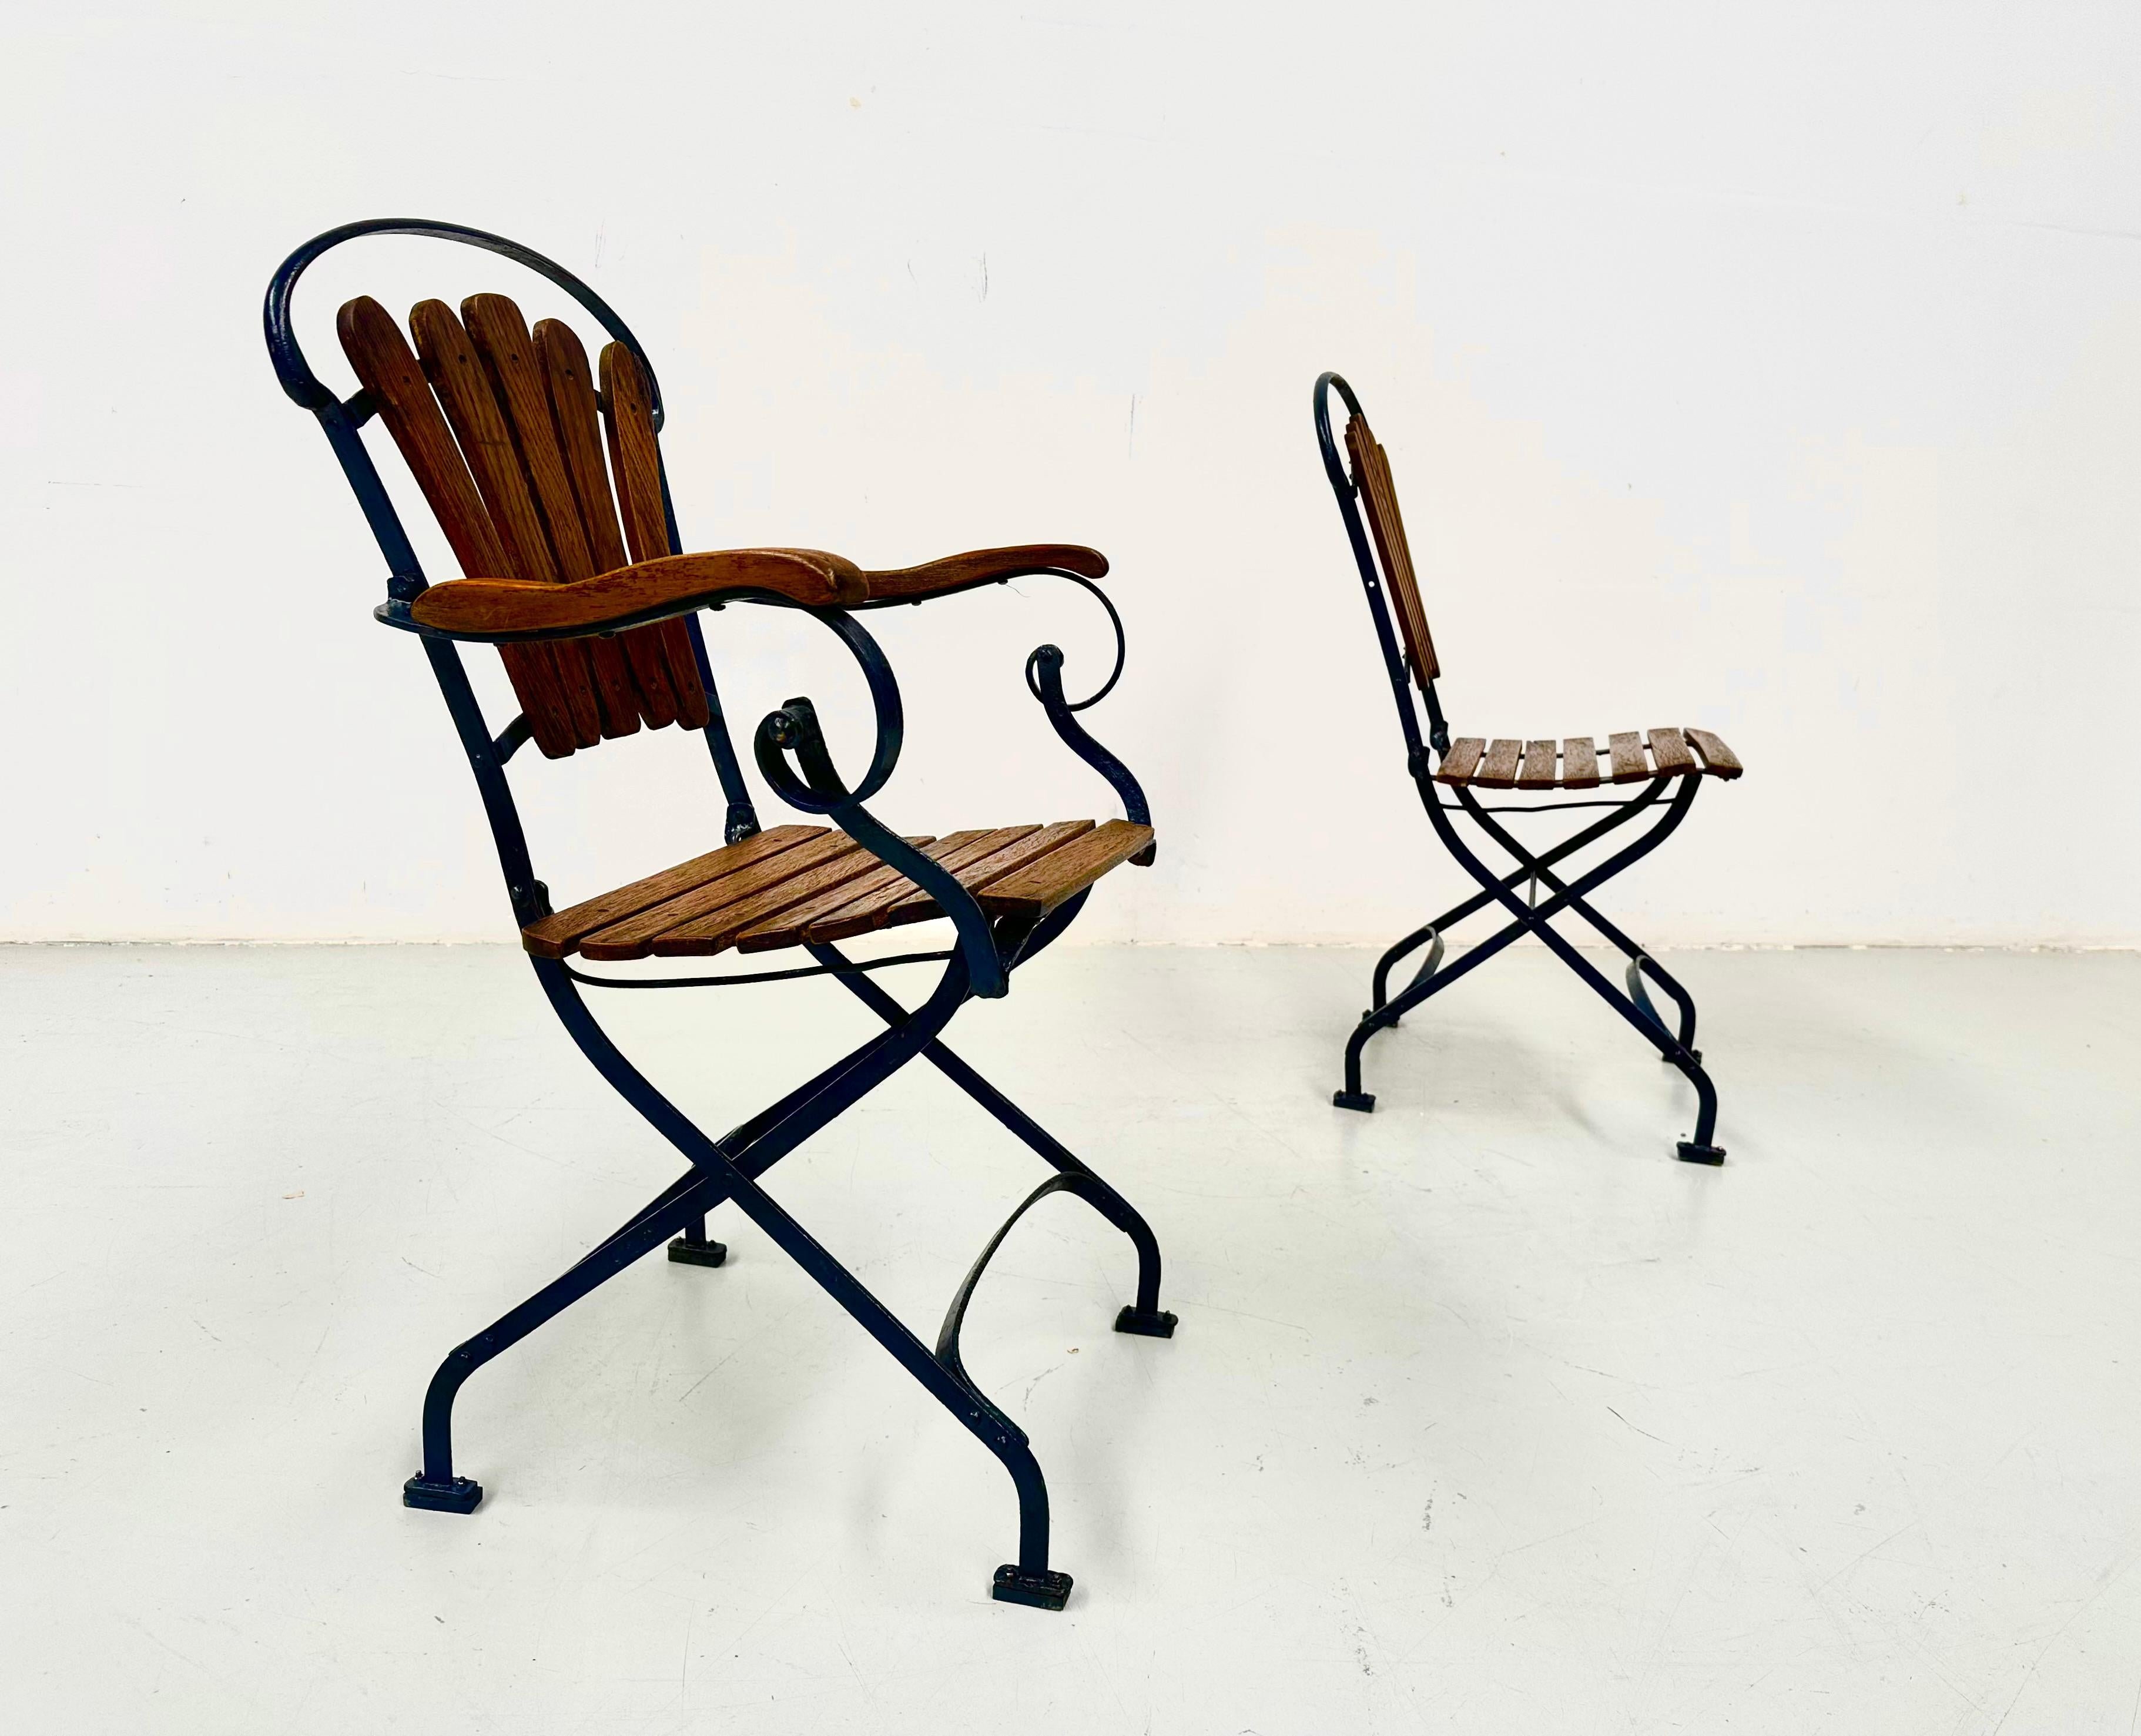 Cette paire de chaises de bistrot anciennes en fer forgé bleu et en bois de chêne a été fabriquée dans les années 30 en France. L'ensemble est remis à neuf et vérifié dans notre atelier. Les anciens panneaux de bois usés ont été remplacés par de